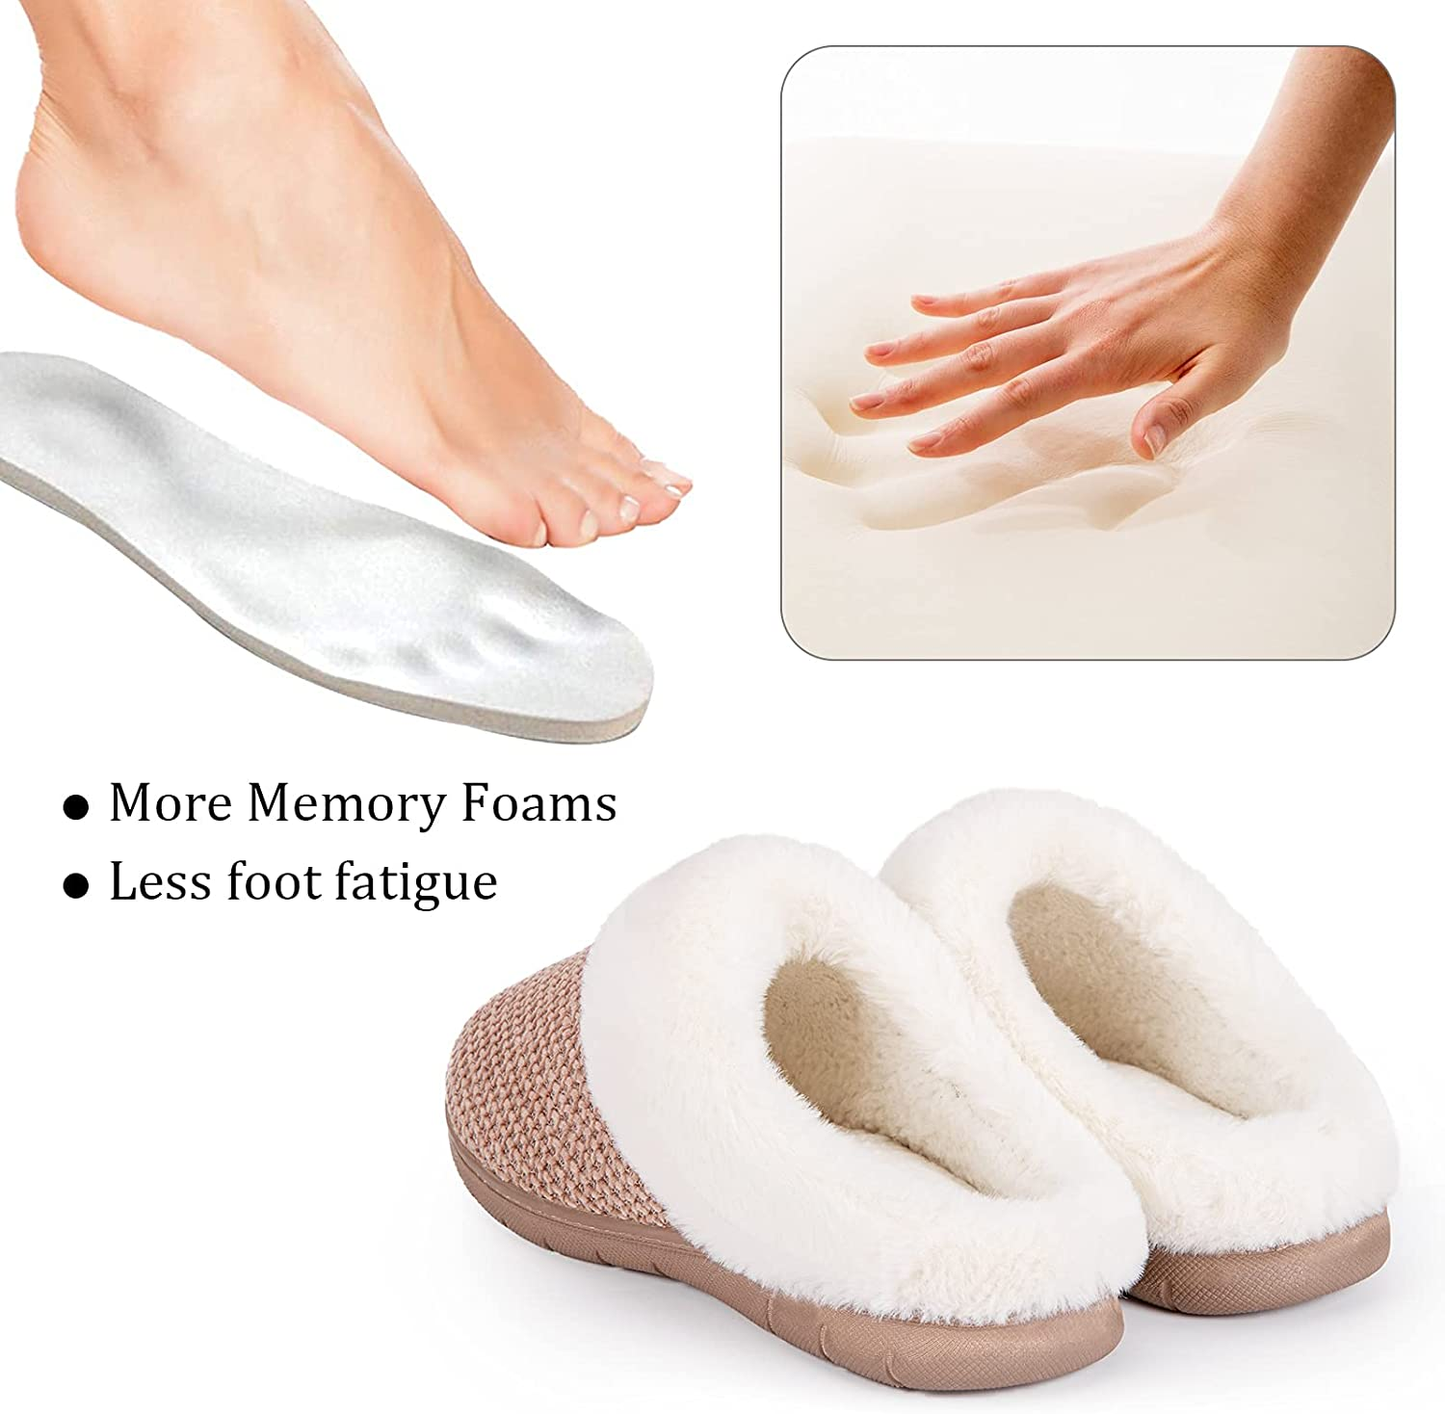 Women'S Cozy Chenille Memory Foam Bedroom House Slippers